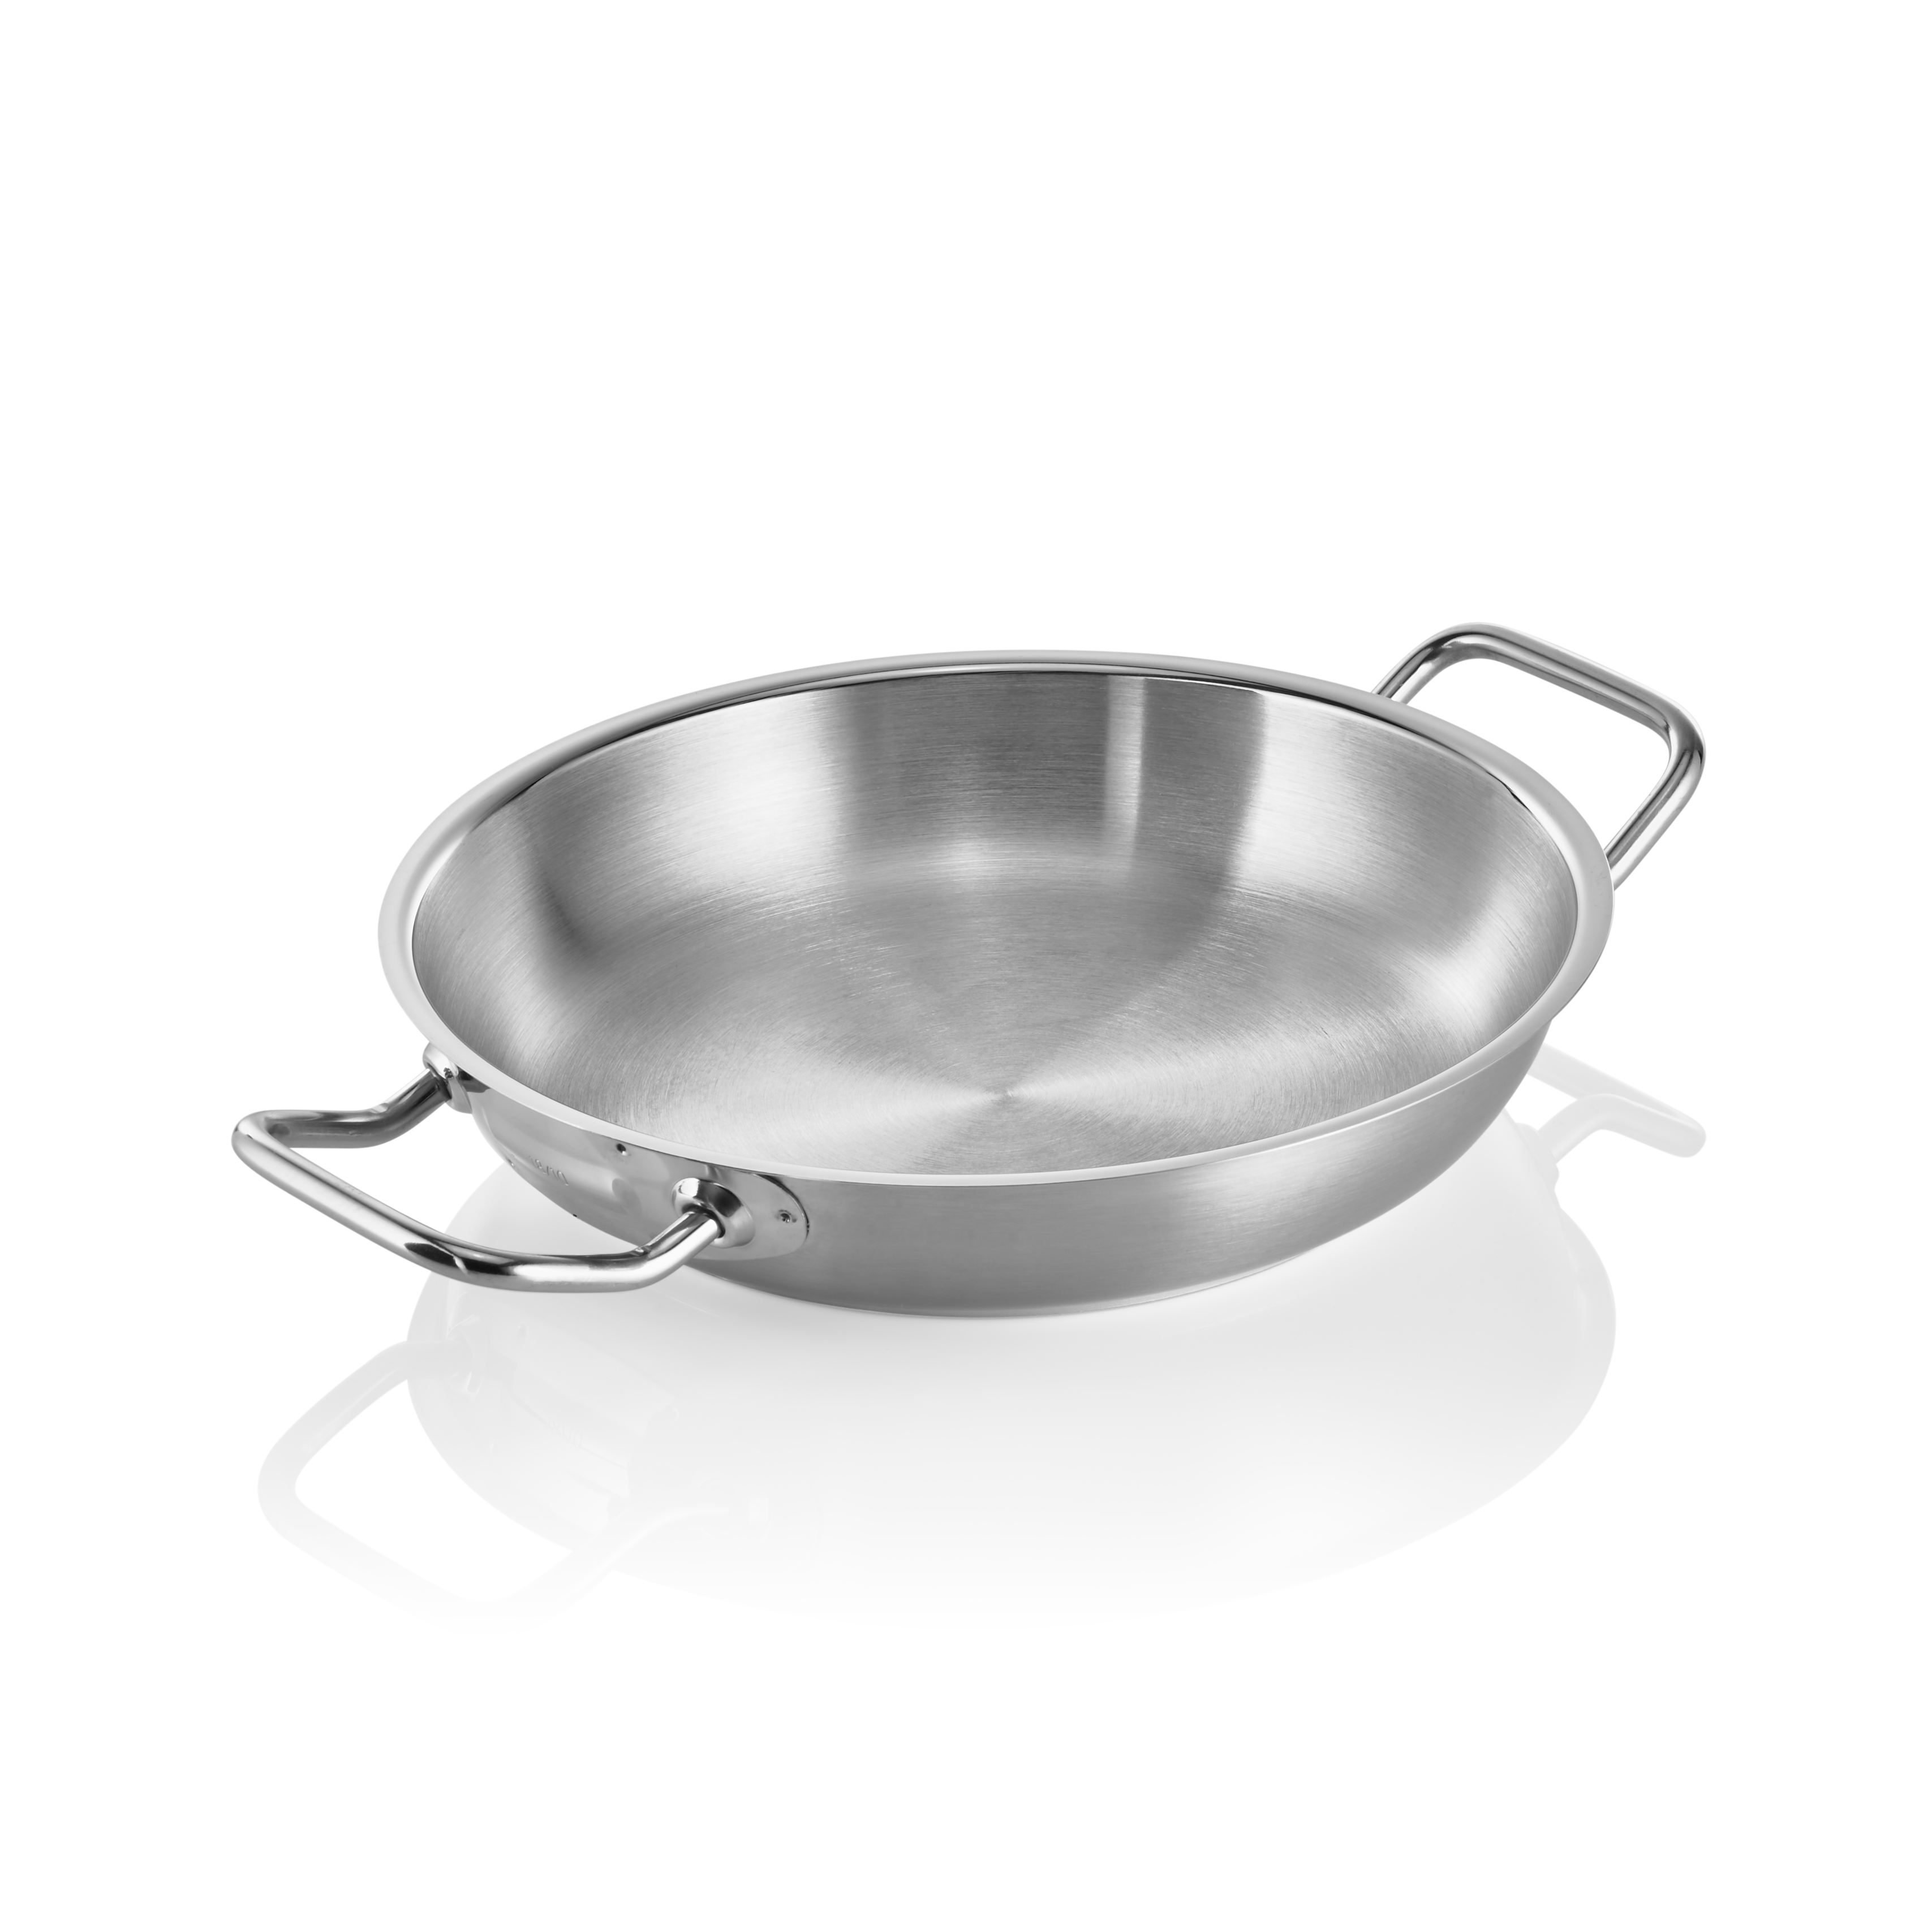 Sauteuse Cookware 21 mit PTFE Antihaftbeschichtung, Ø 24 cm, Chromnickelstahl 18/10